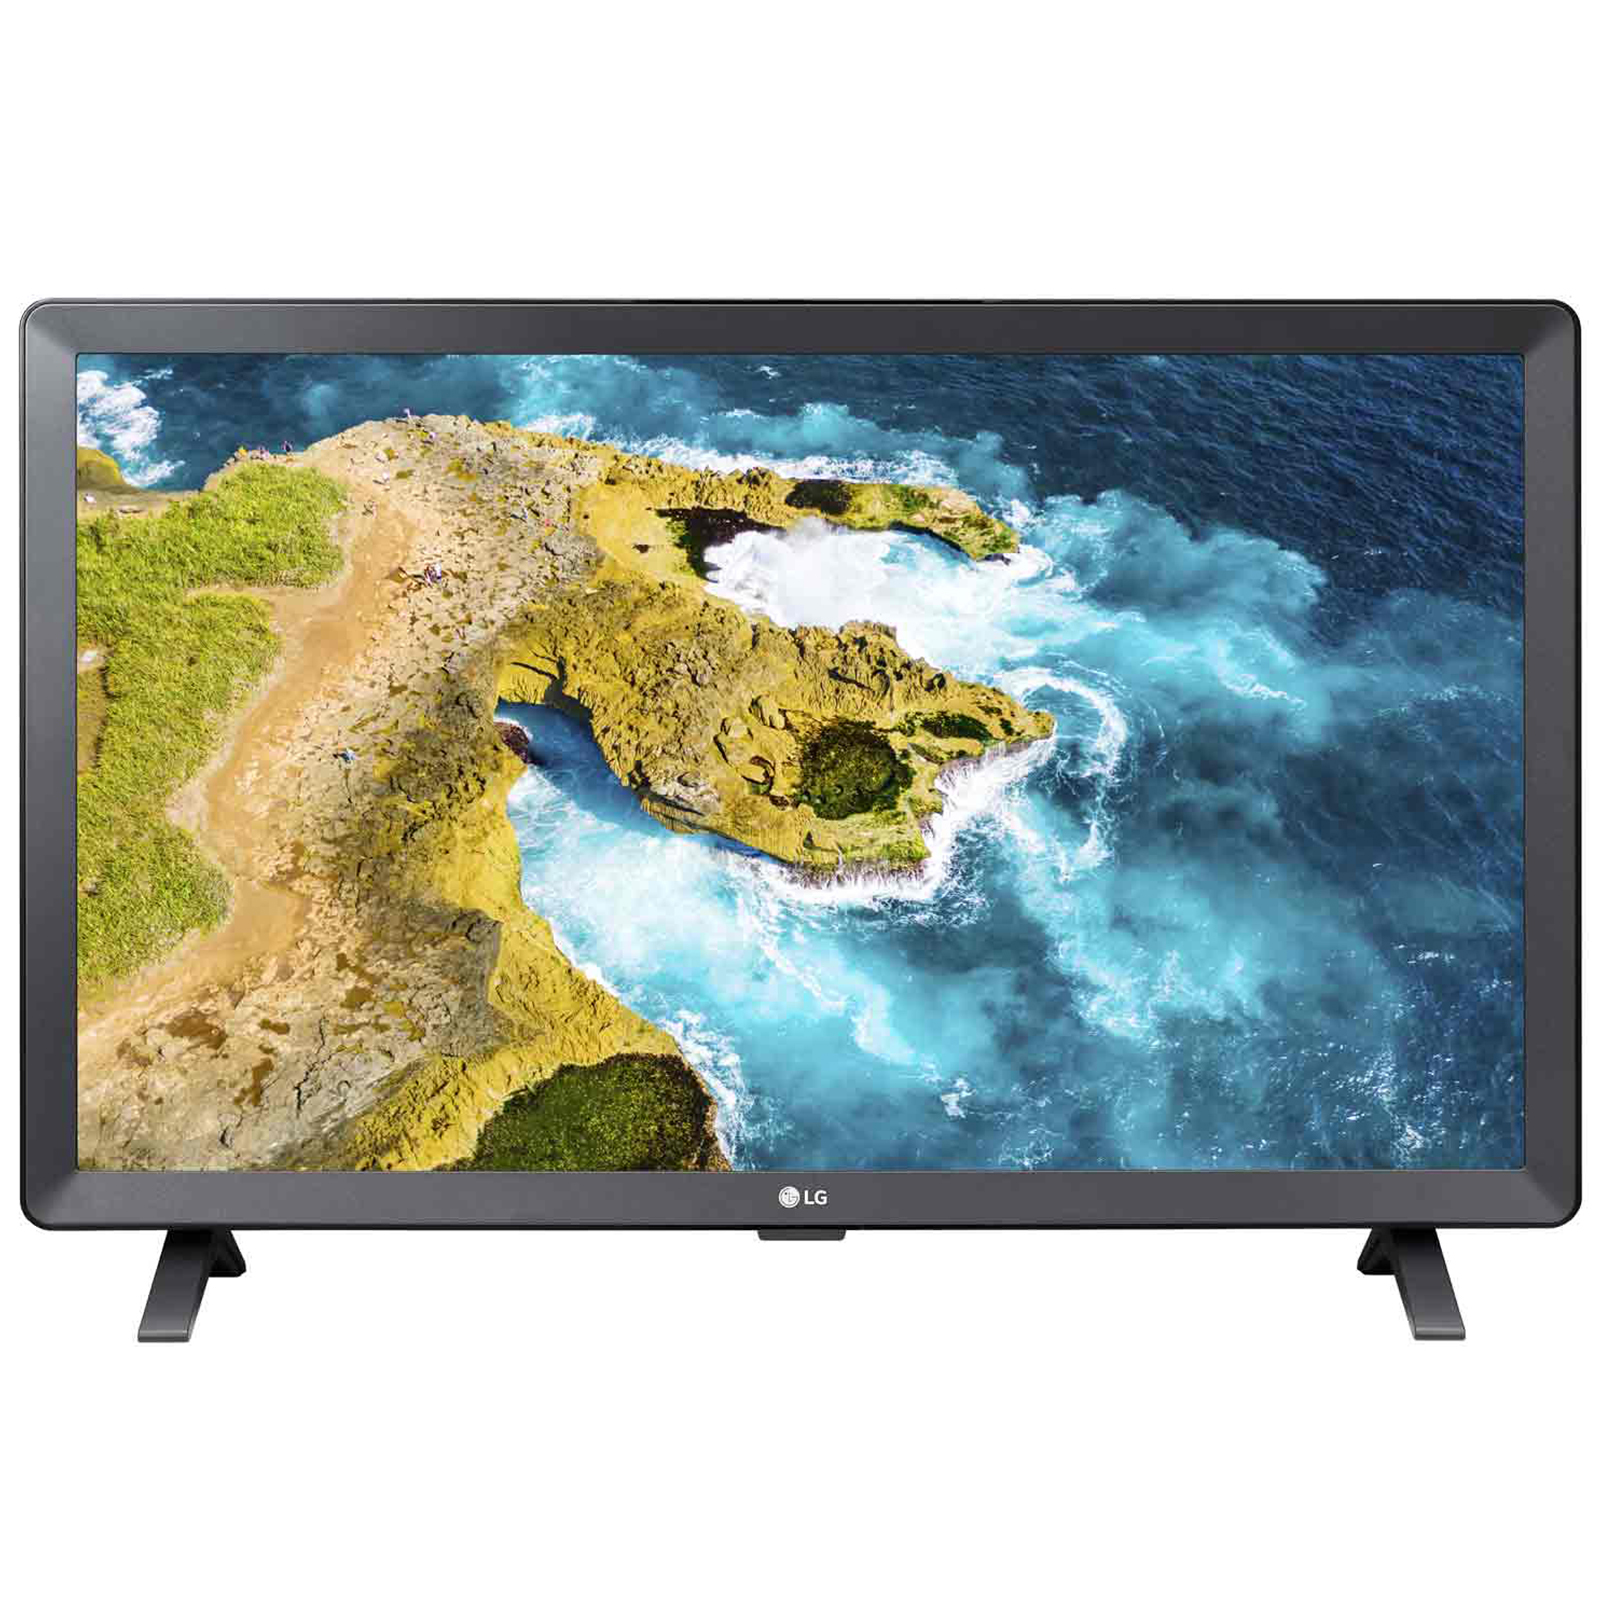 TV LED smart LG 24TQ520S-PZ da Esselunga: in offerta al prezzo di 169 euro